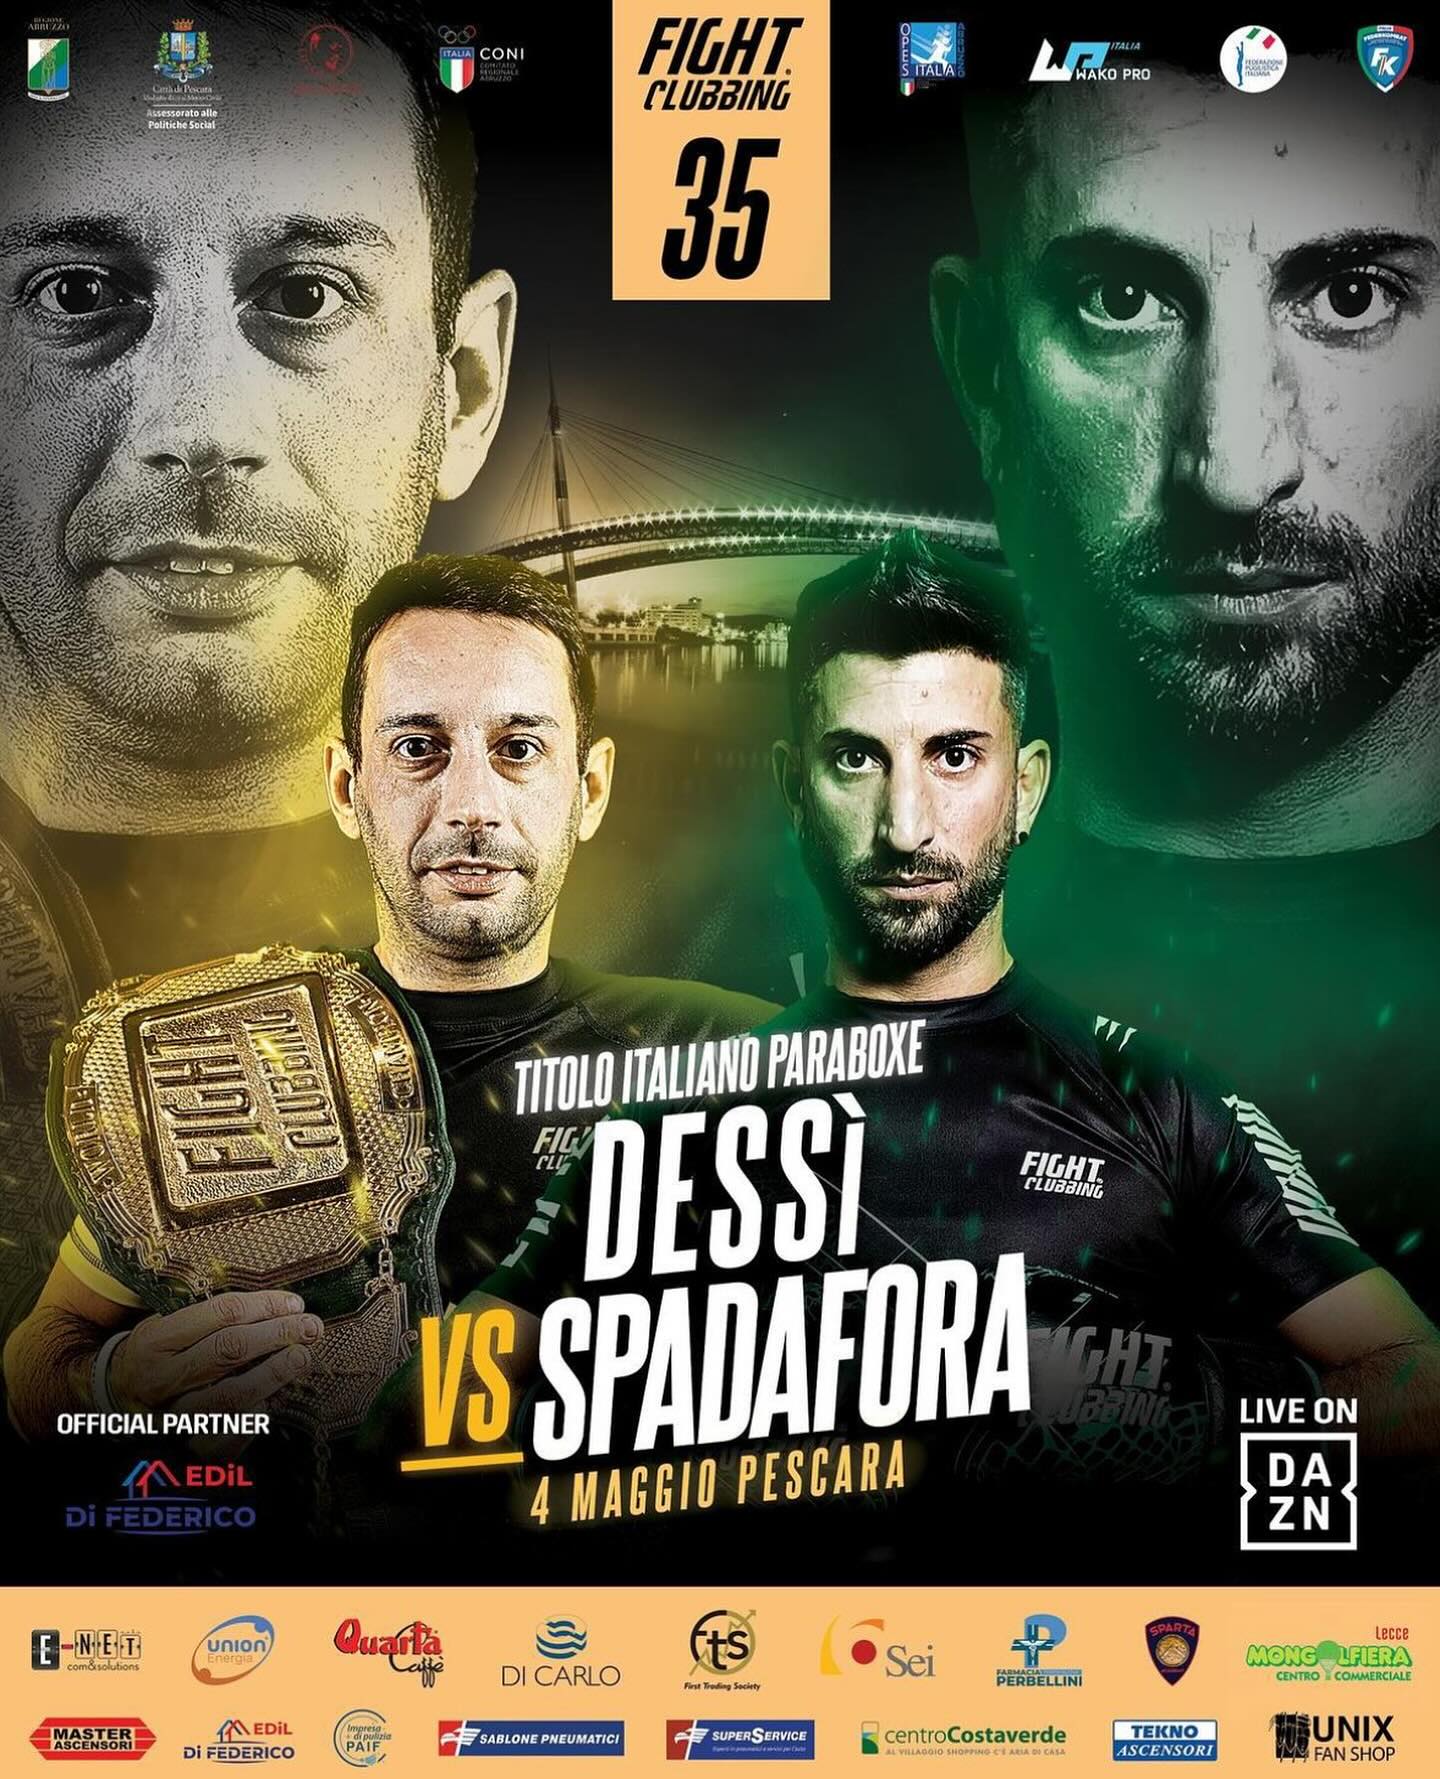 Campionato FPI di Boxe Autonoma in Carrozzina: Il 4 Maggio a Pescara Dessi vs Spadafora 